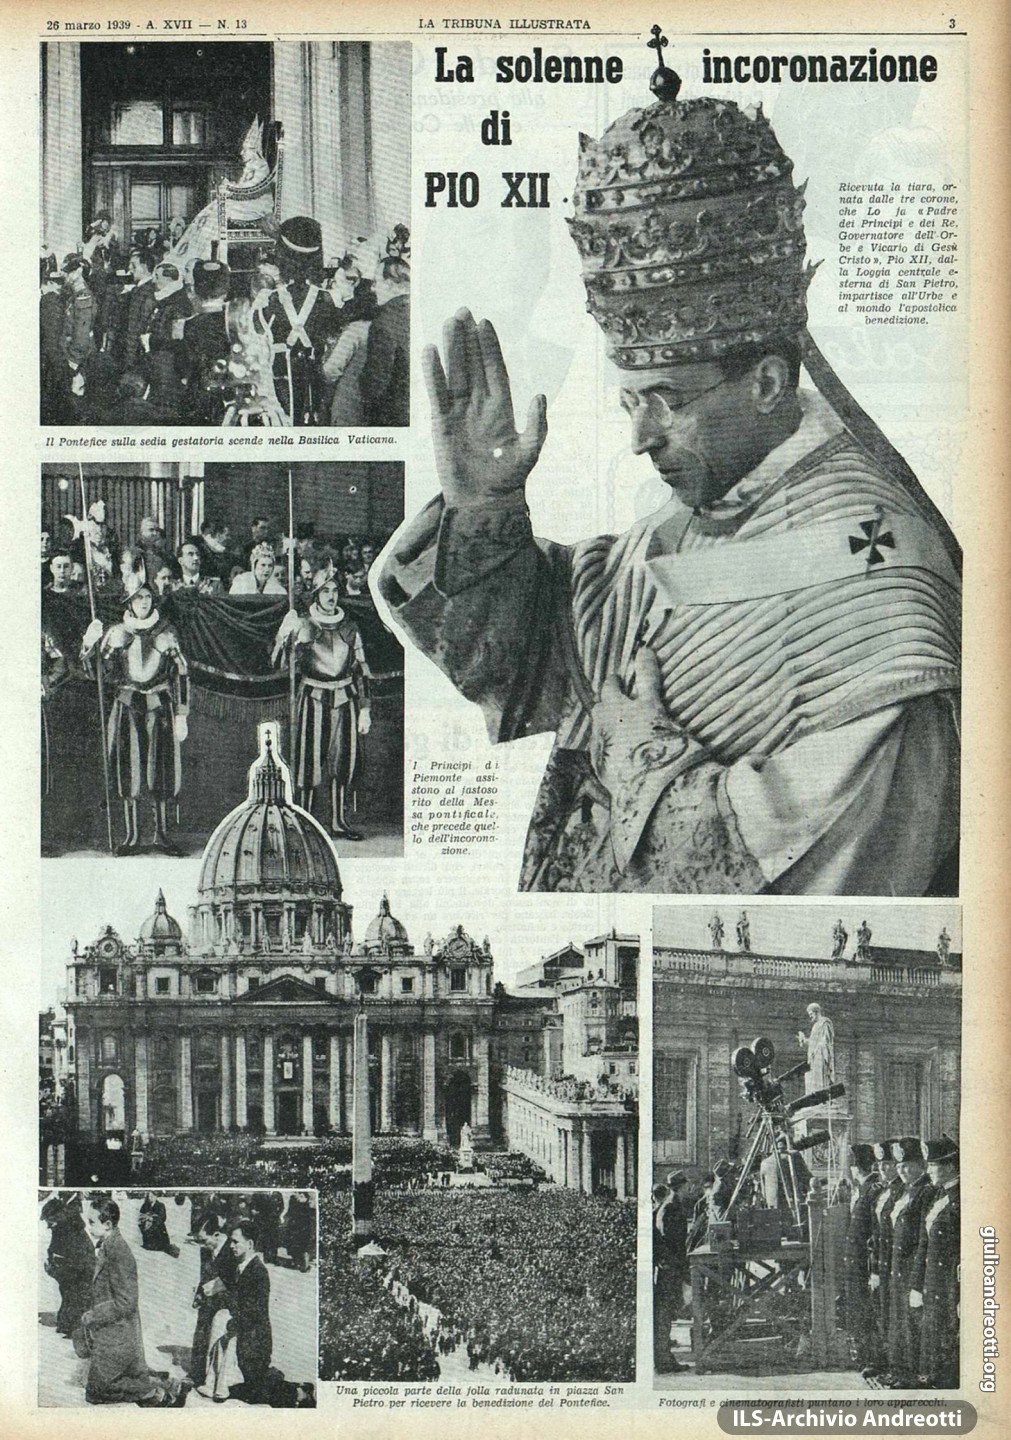 27 marzo 1939. Pagina della Tribuna Illustrata dedicata alla elezione di Pio XII. In basso a sinistra appare Andreotti inginocchiato sul sagrato di S. Pietro insieme all'amico Checco Negri.